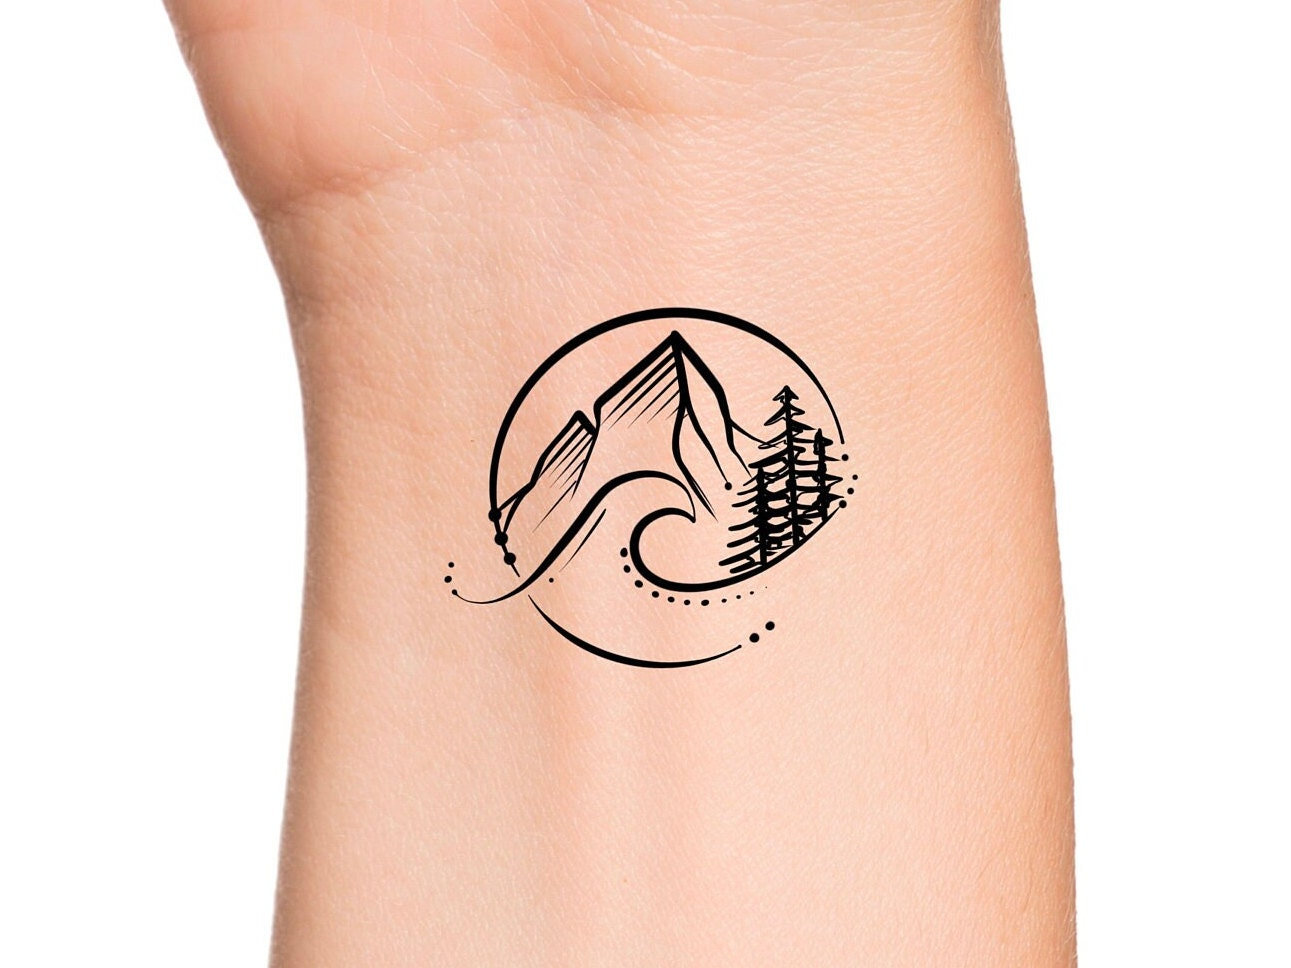 10 Stunning Feminine Mountain Tattoo Designs